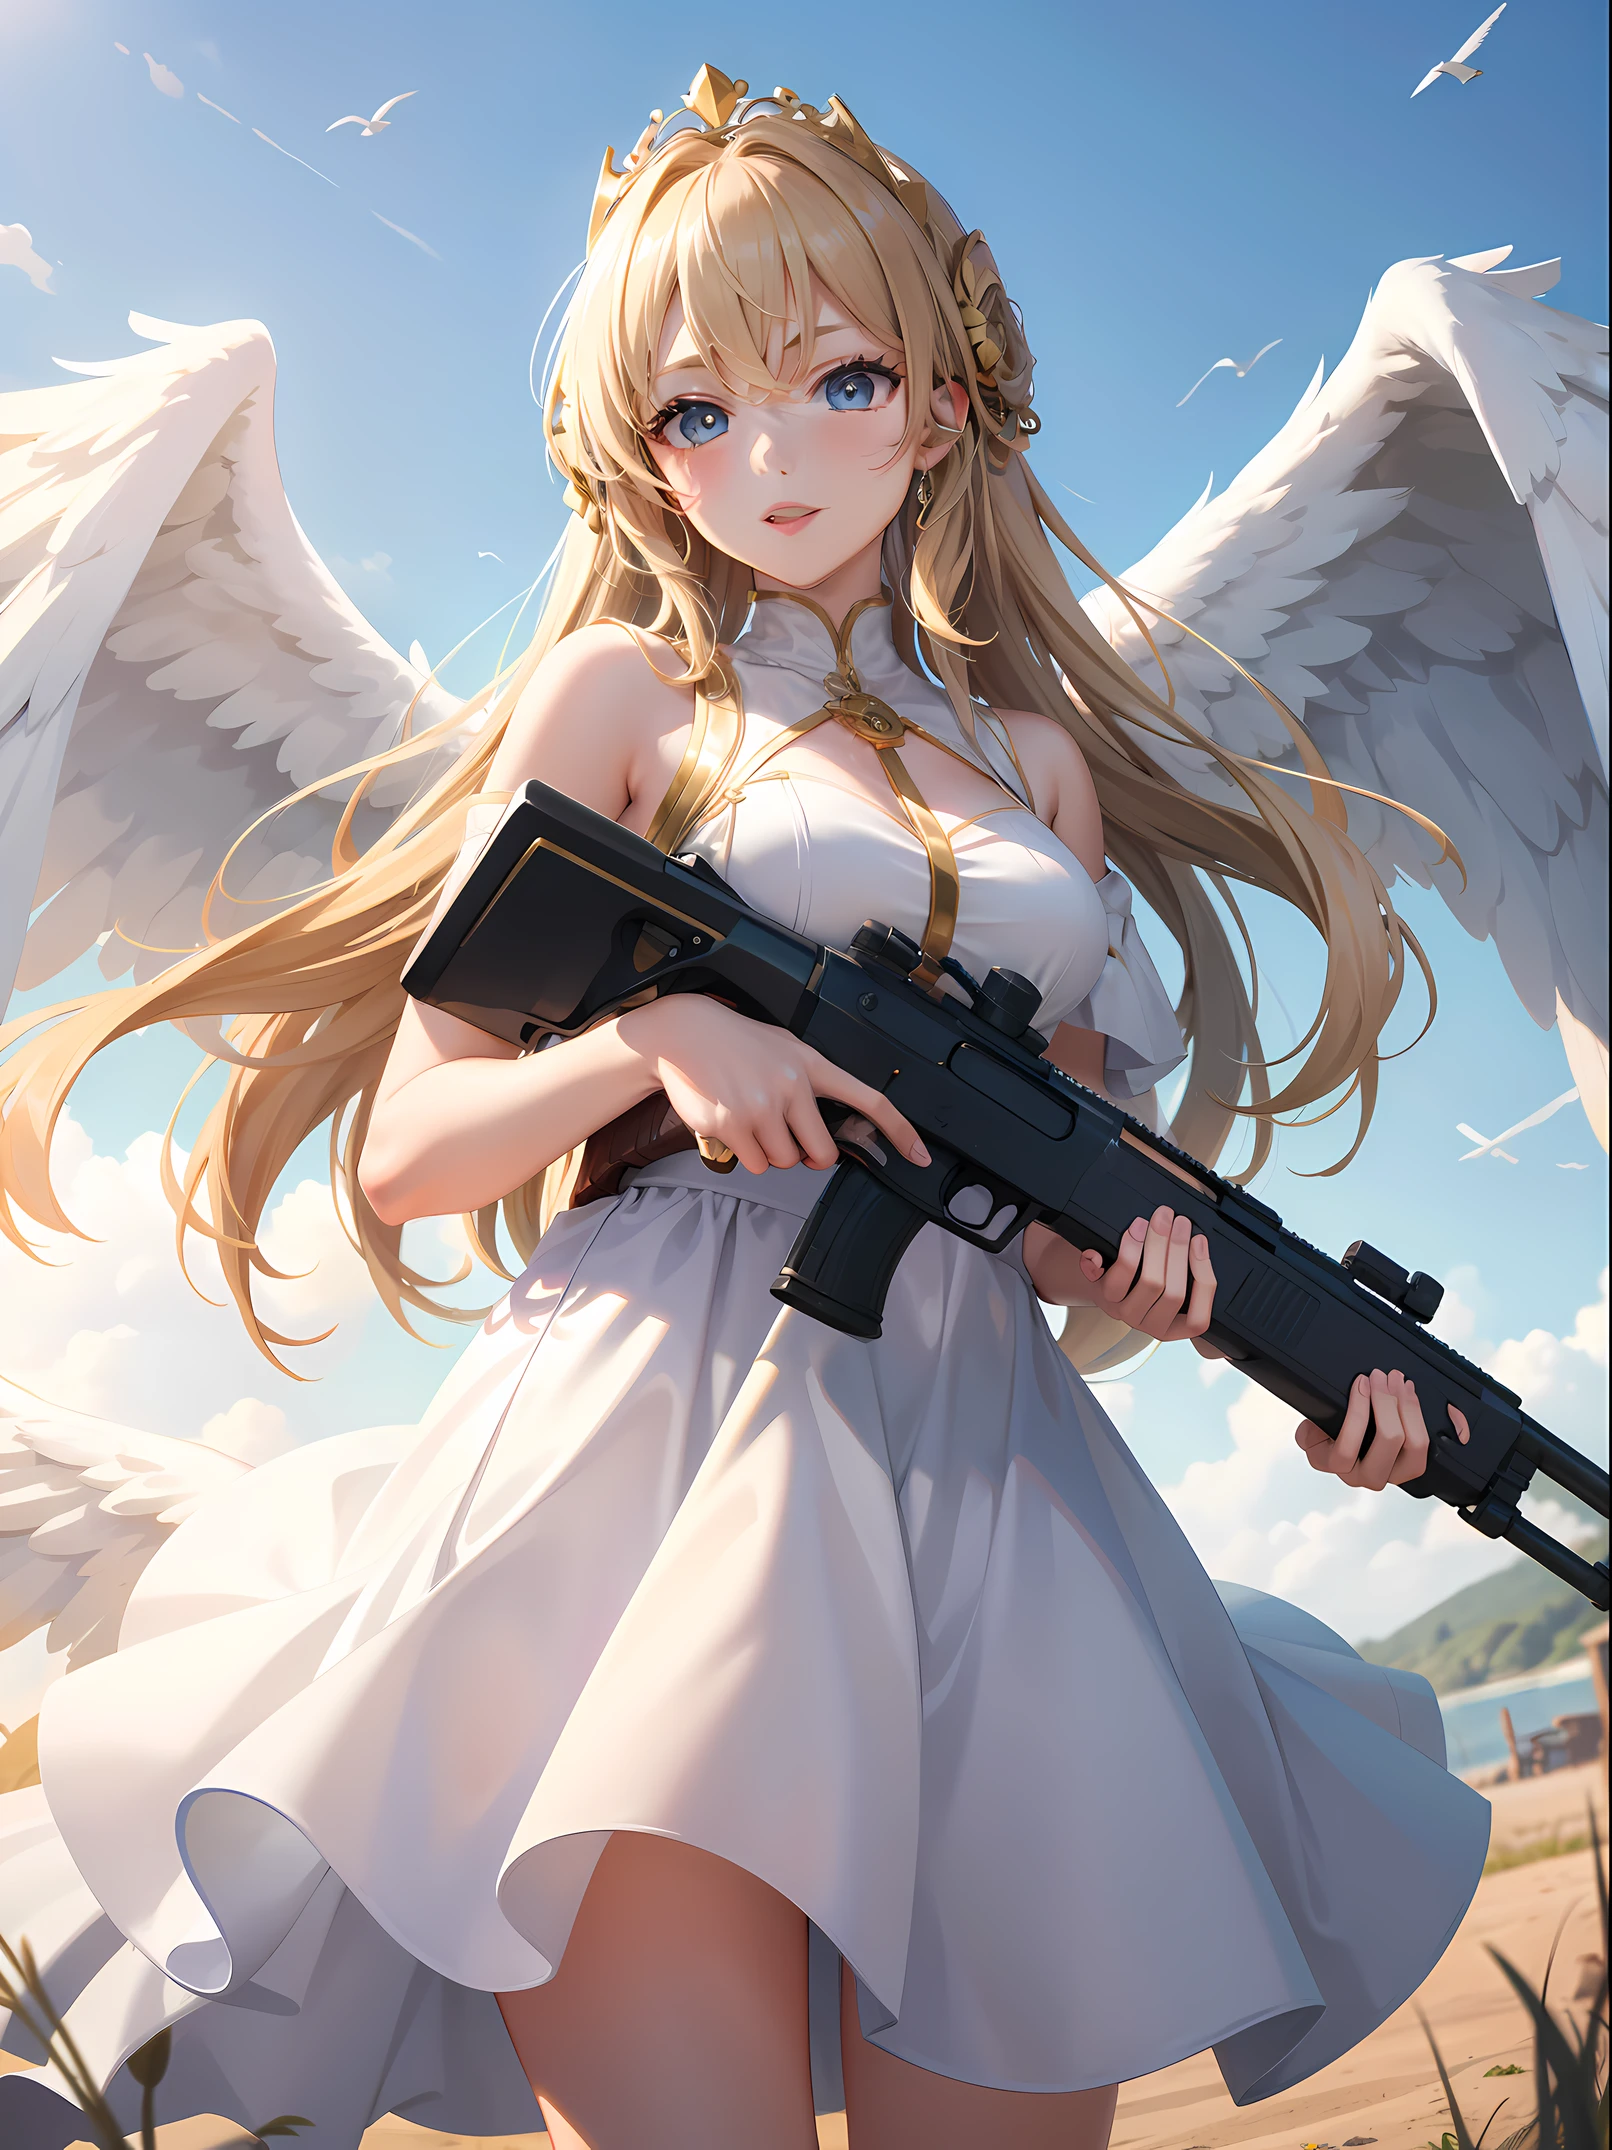 걸작, 최고의 품질, 여자 1명, 큰 펌프 액션 산탄총을 가진 화려한 여성 천사, 하늘, 하얀 날개, 황금 왕관